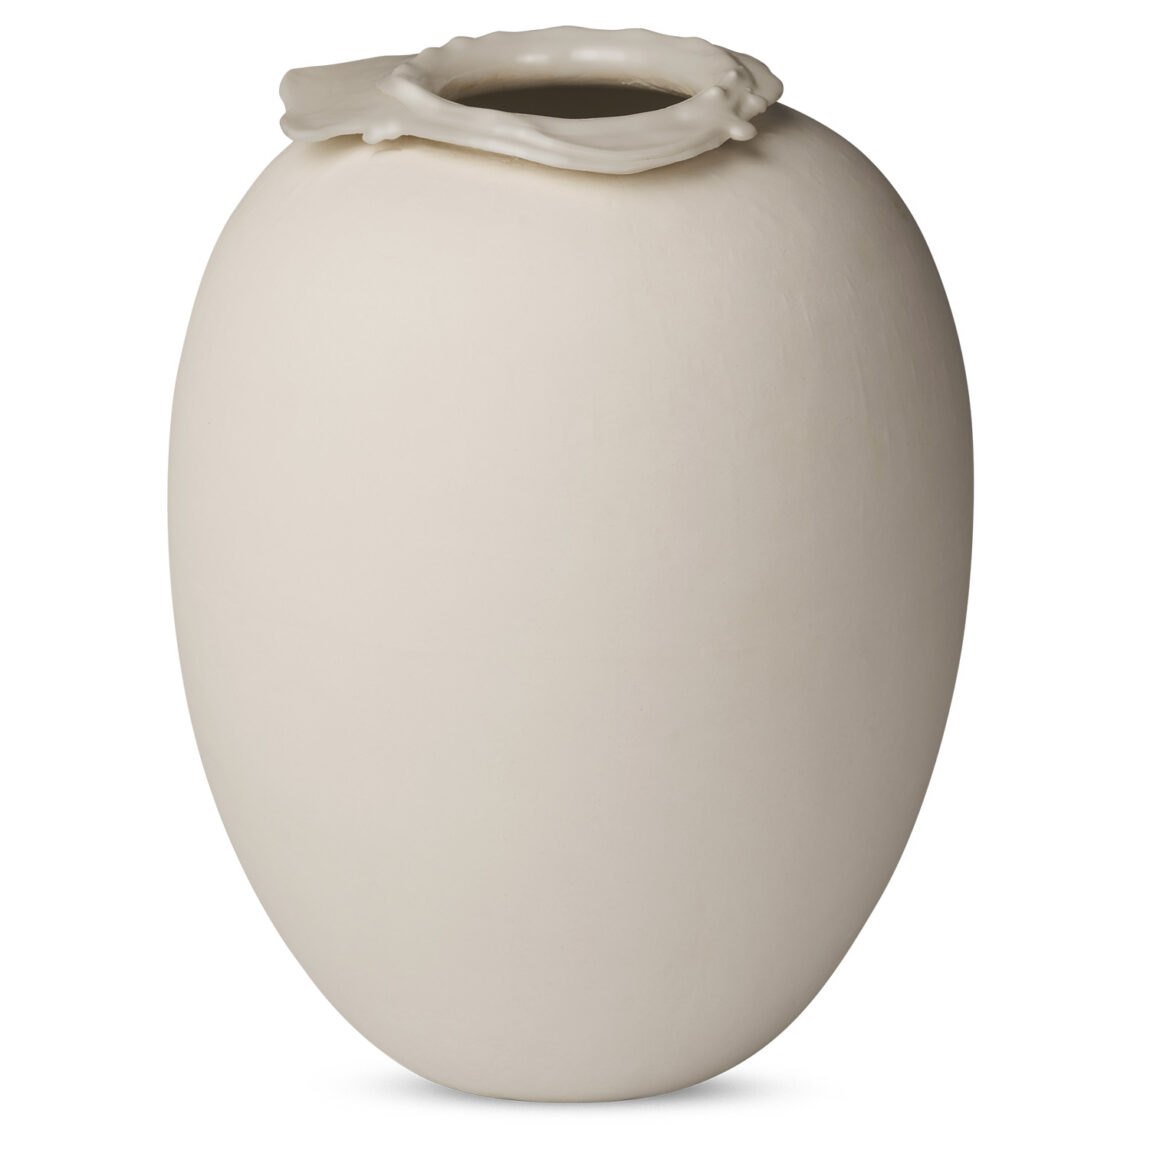 Northern designové vázy Brim Vase Large